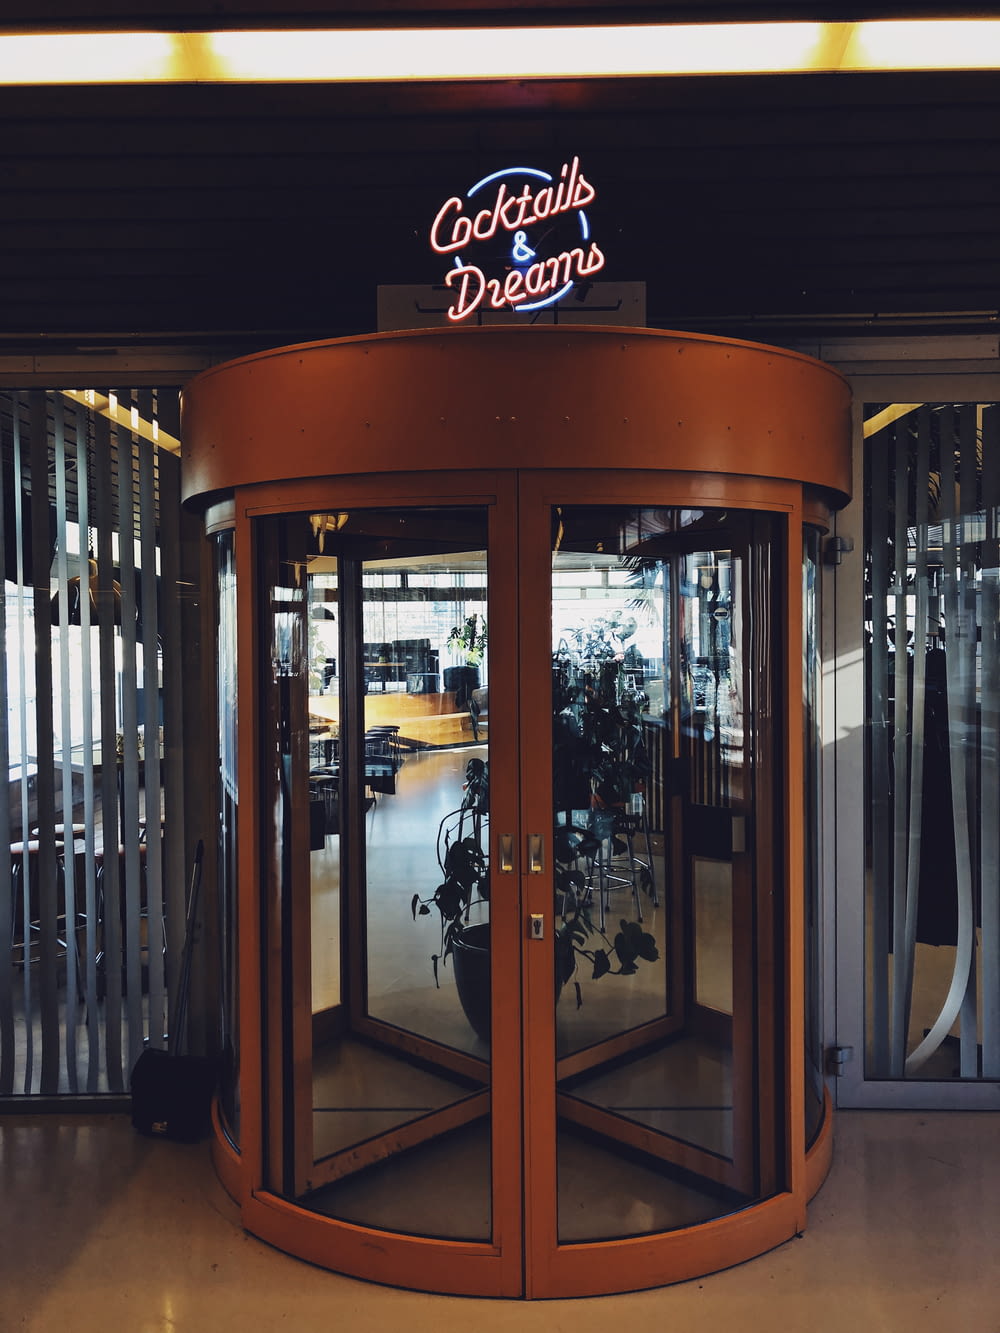 Cocktails & Dreams entrance